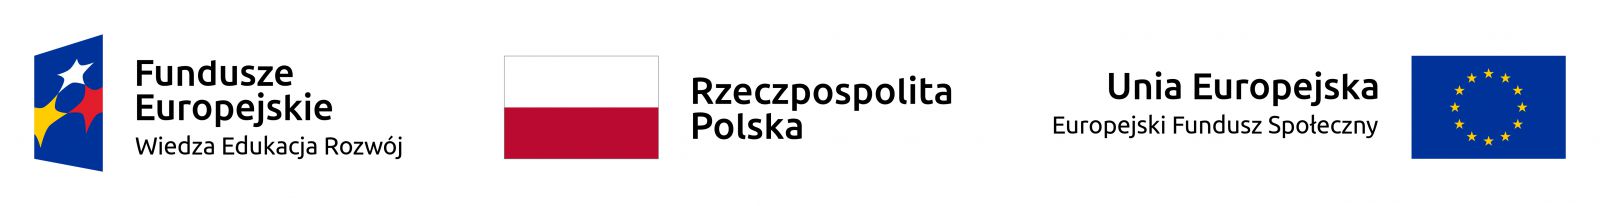 logo Fundusze Europejskie - Wiedza, Edukacja, Rozwój; biało-czerwona flaga Rzeczpospolitej Polskiej; flaga Unii Europejskiej - Europejski Fundusz Społeczny